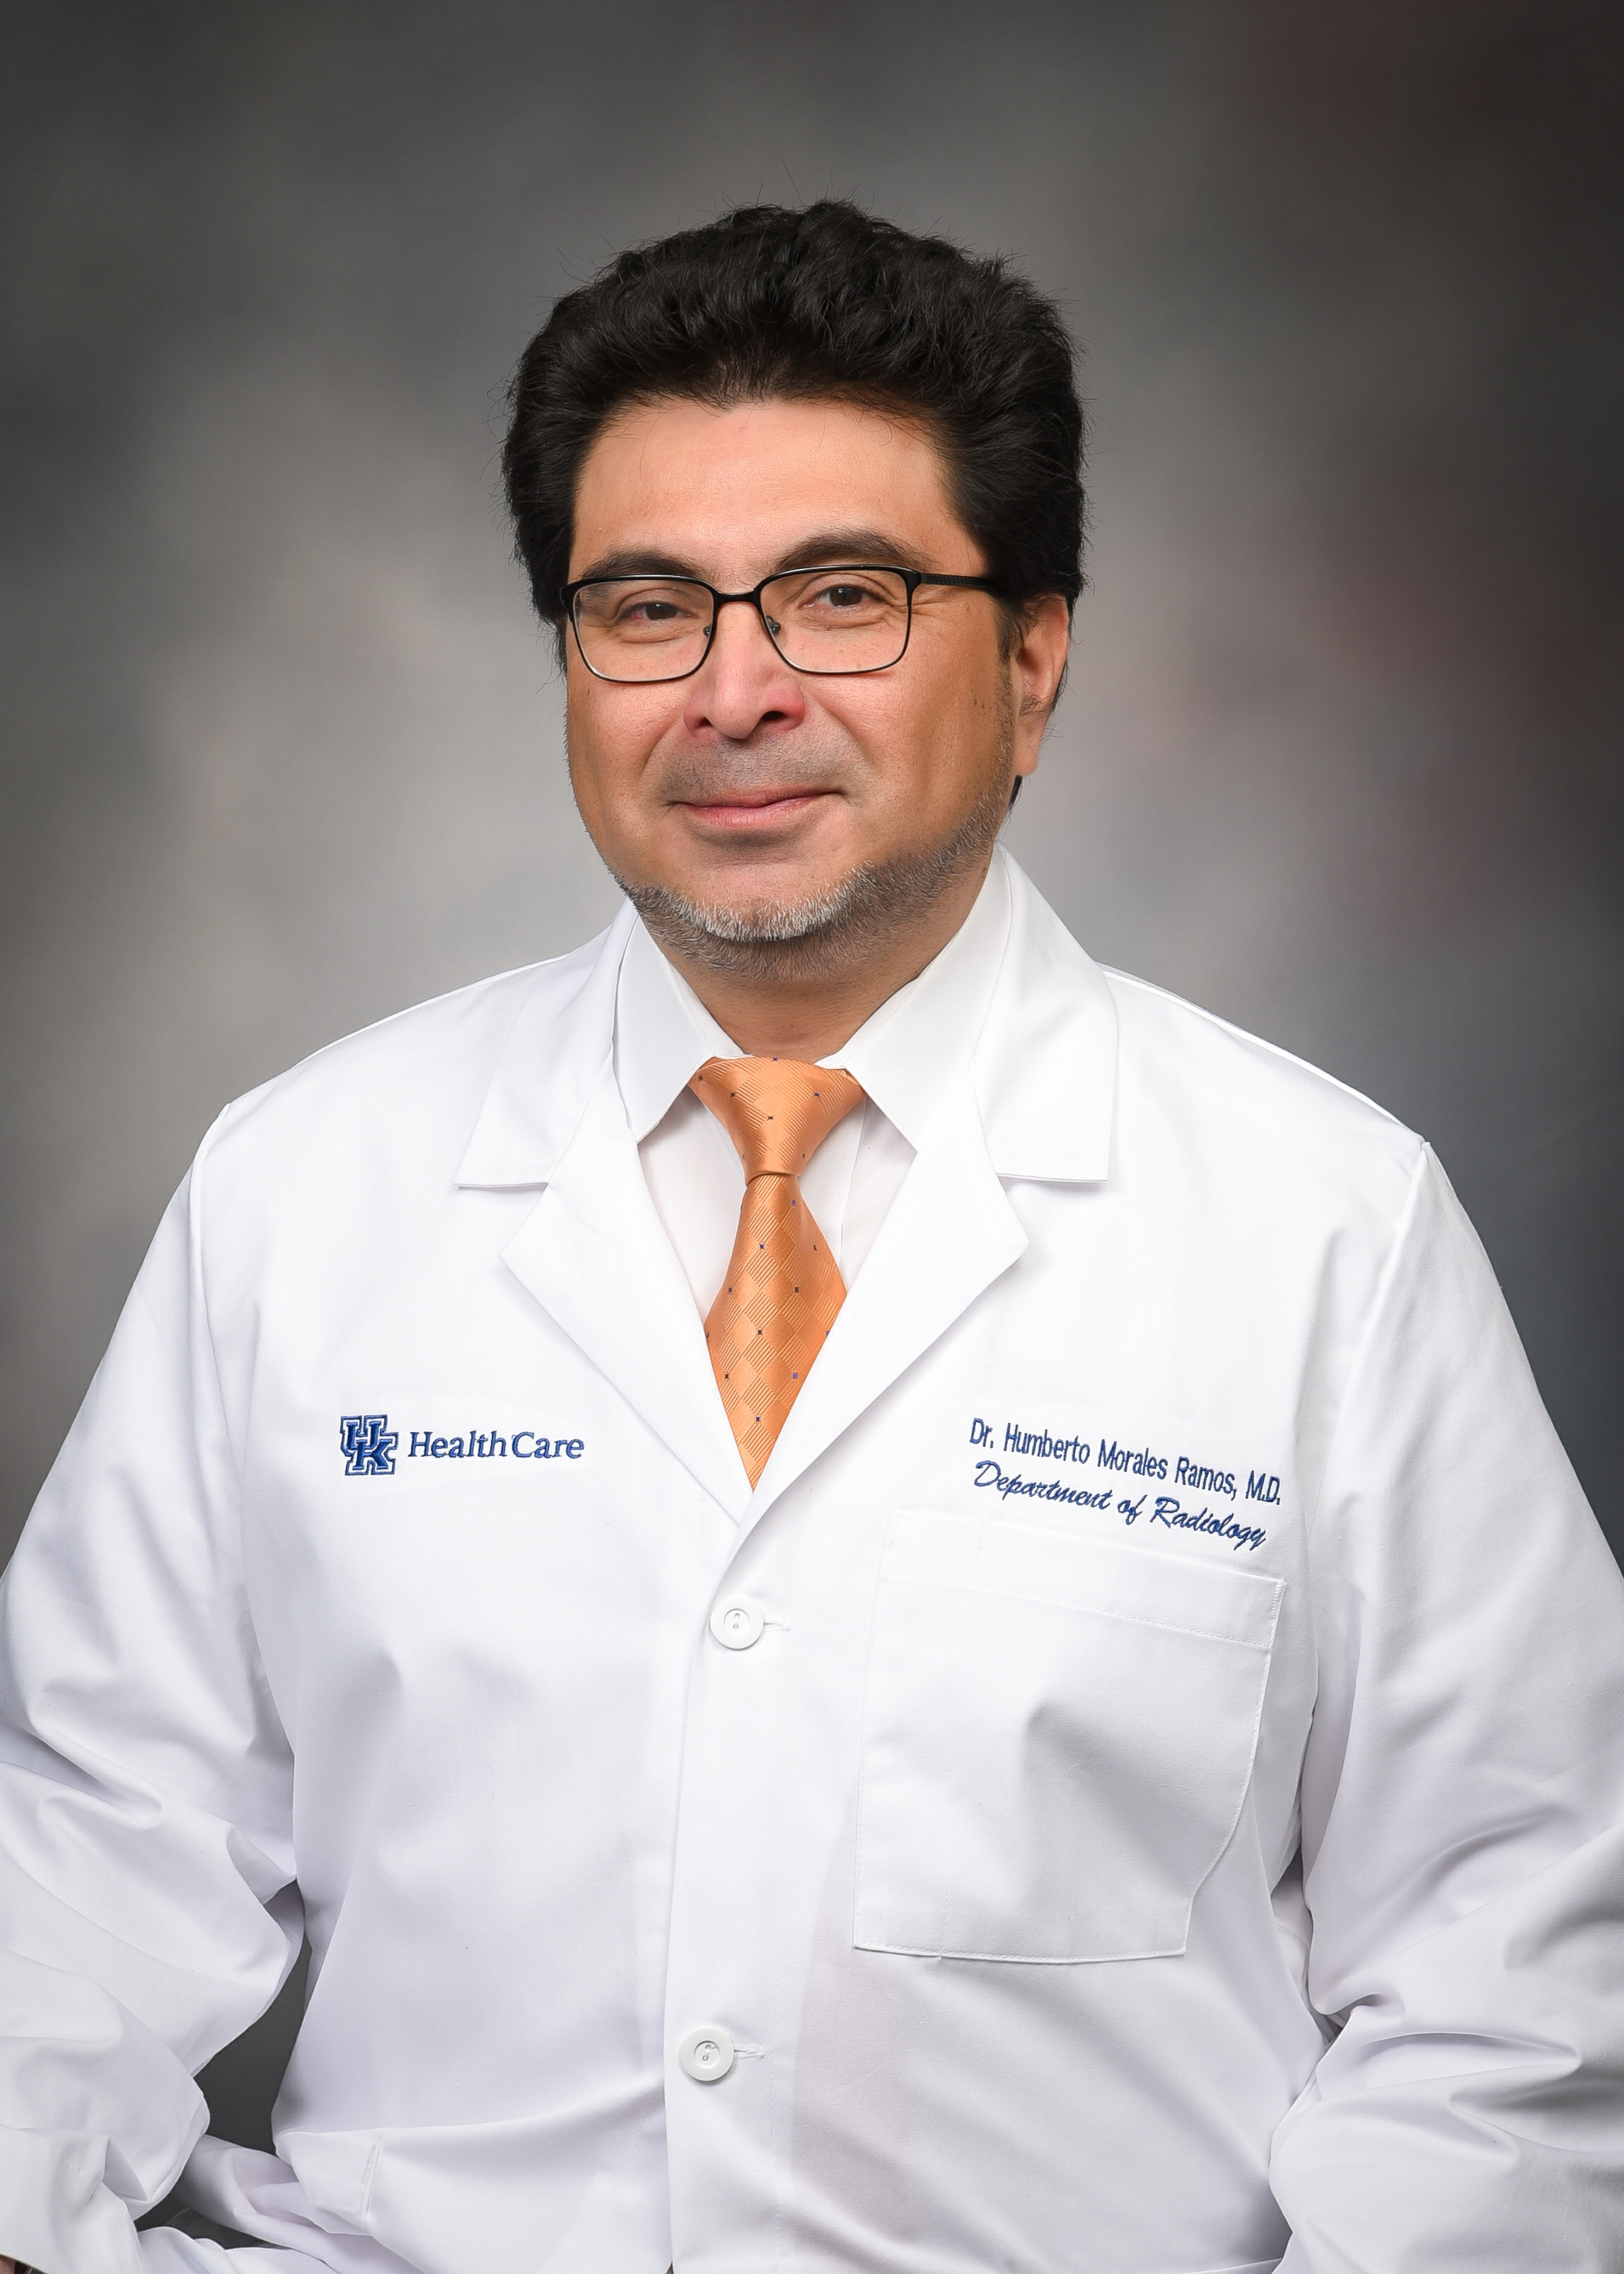 Dr. Humberto Morales Ramos